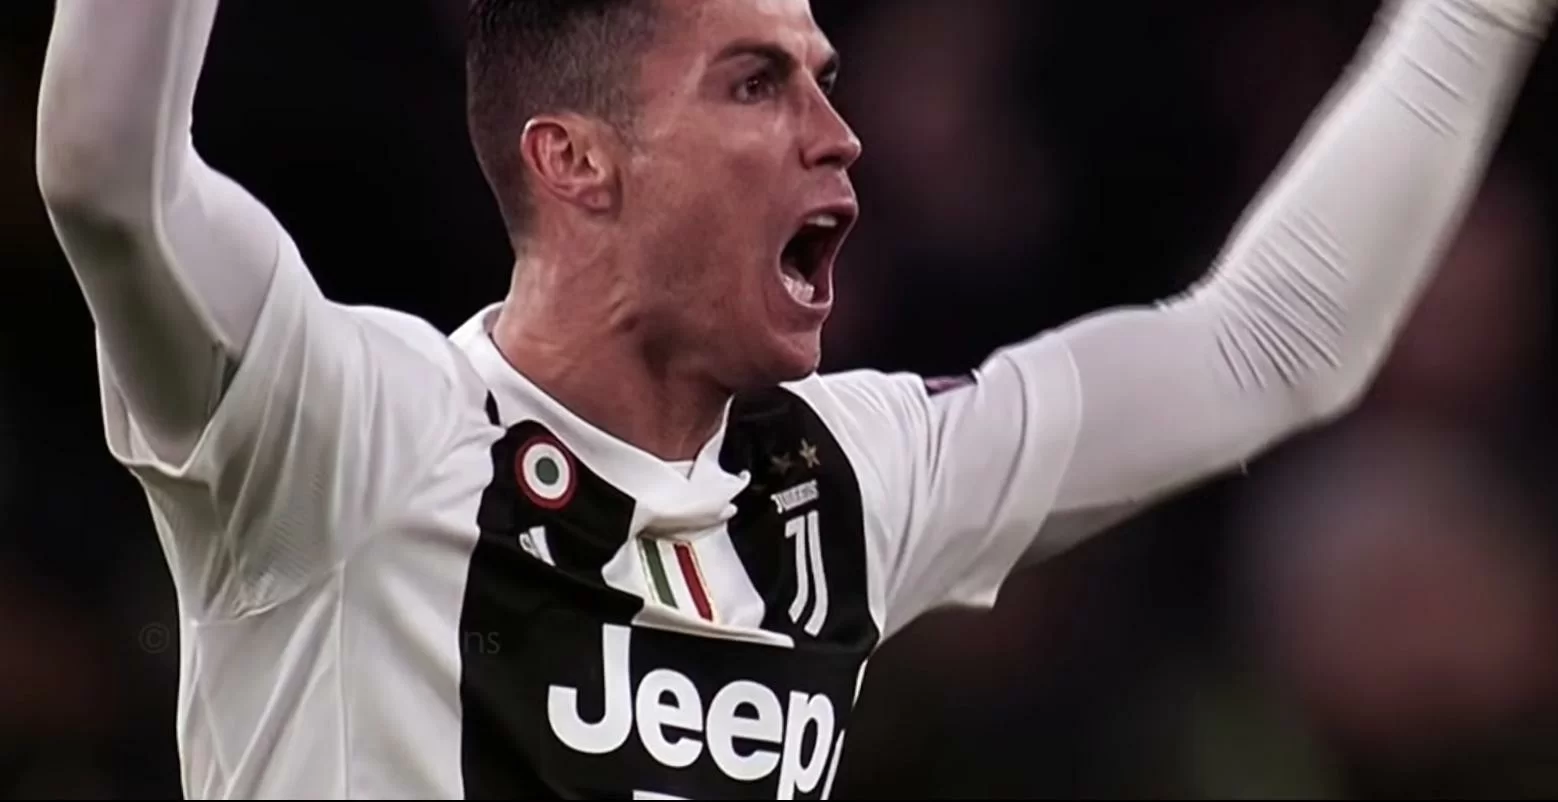 Ronaldo provocato dai tifosi avversari, lui risponde provocatoriamente